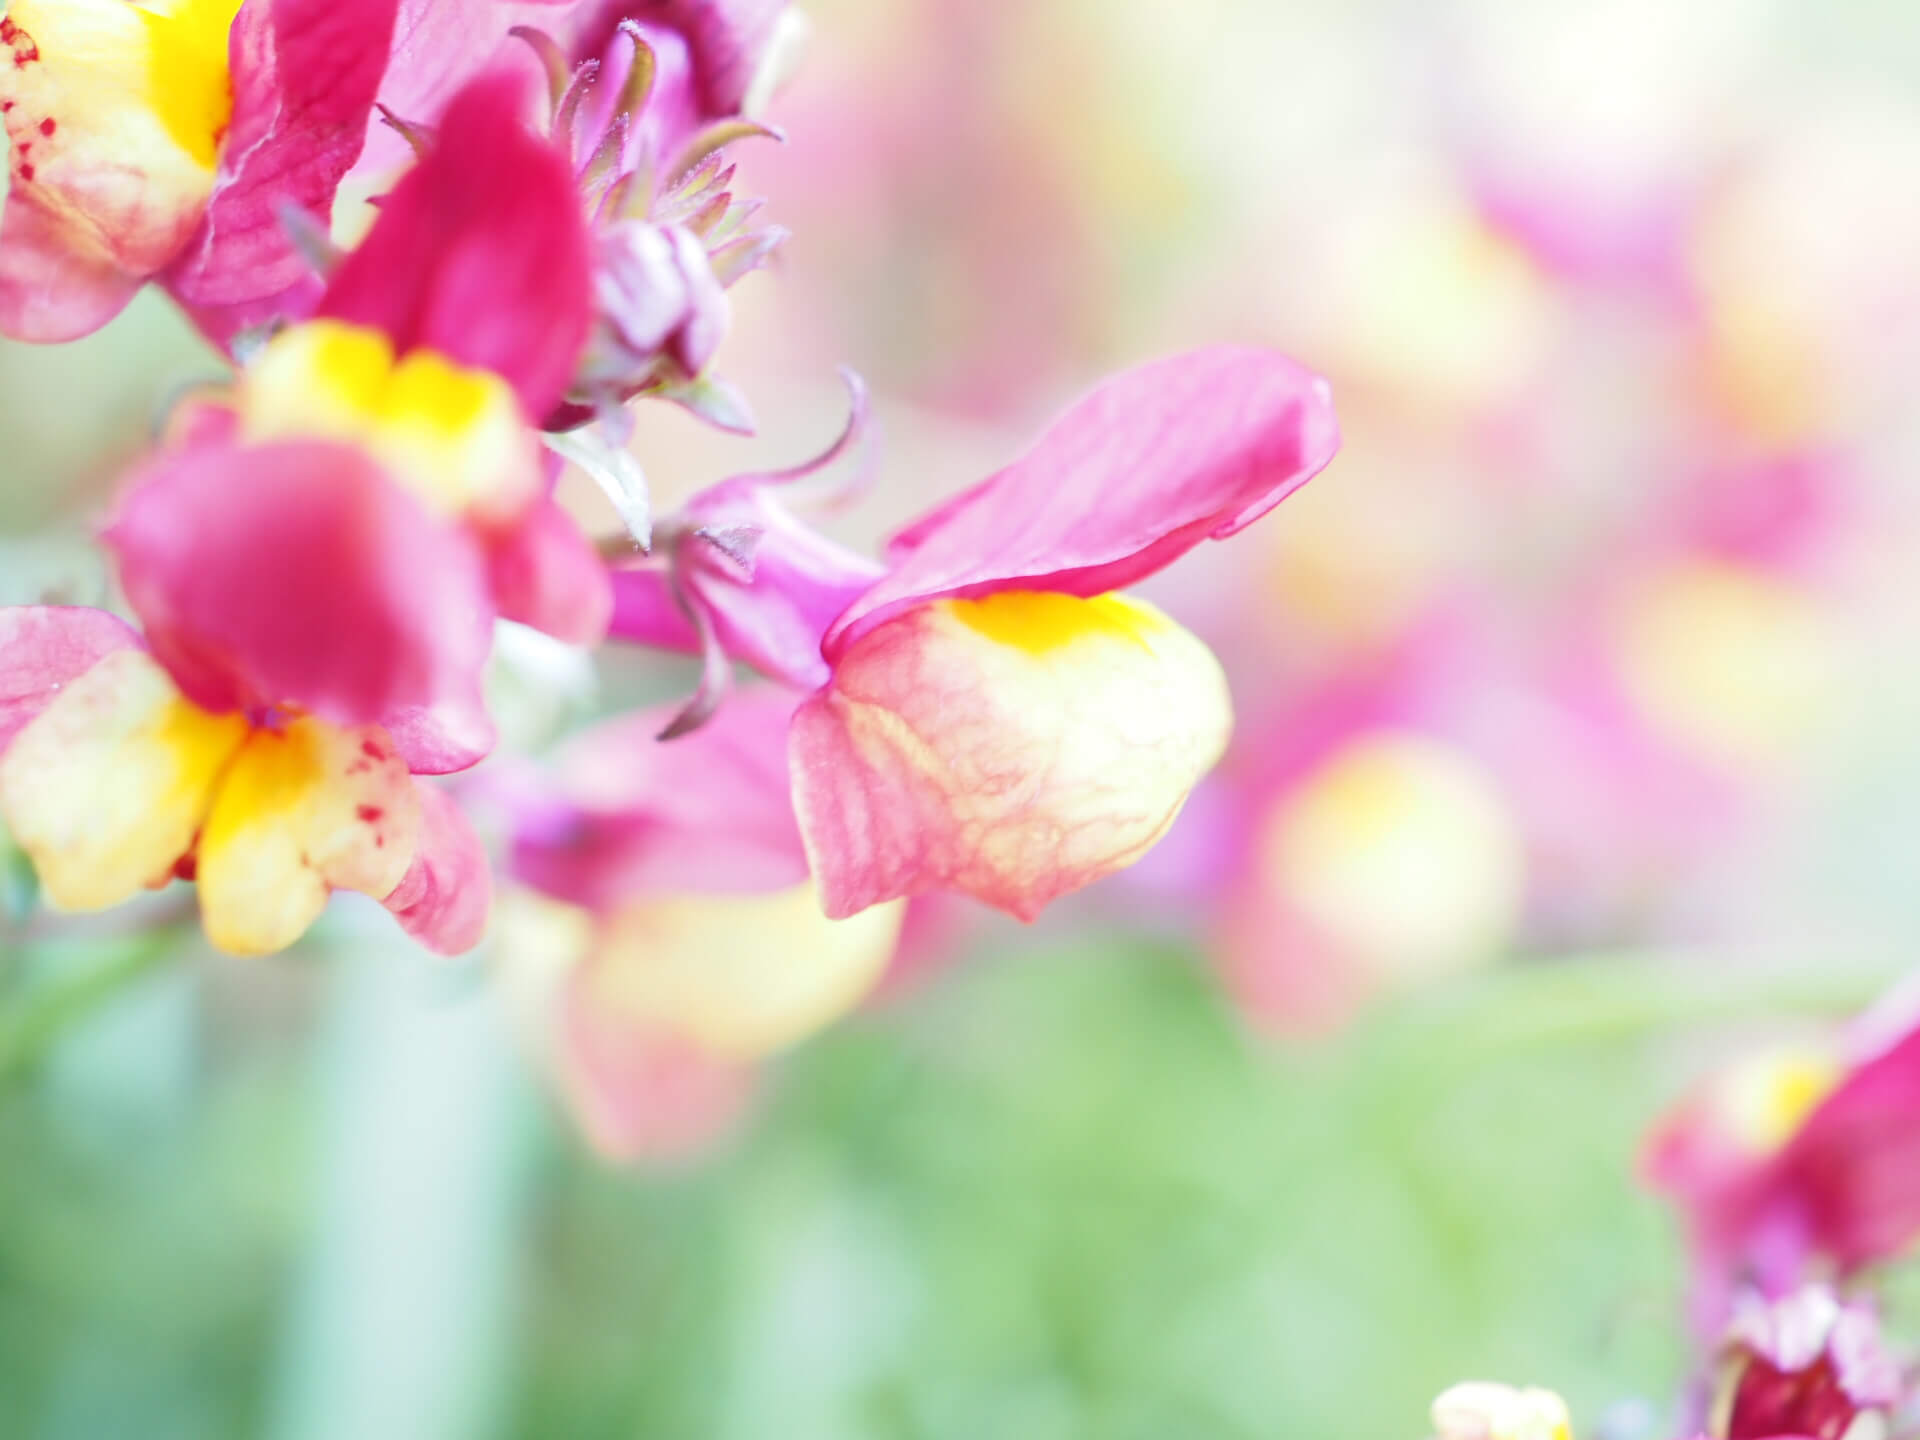 キンギョソウ 金魚草 の花言葉 贈るときは意味に注意 種類や似ている花は Greensnap グリーンスナップ